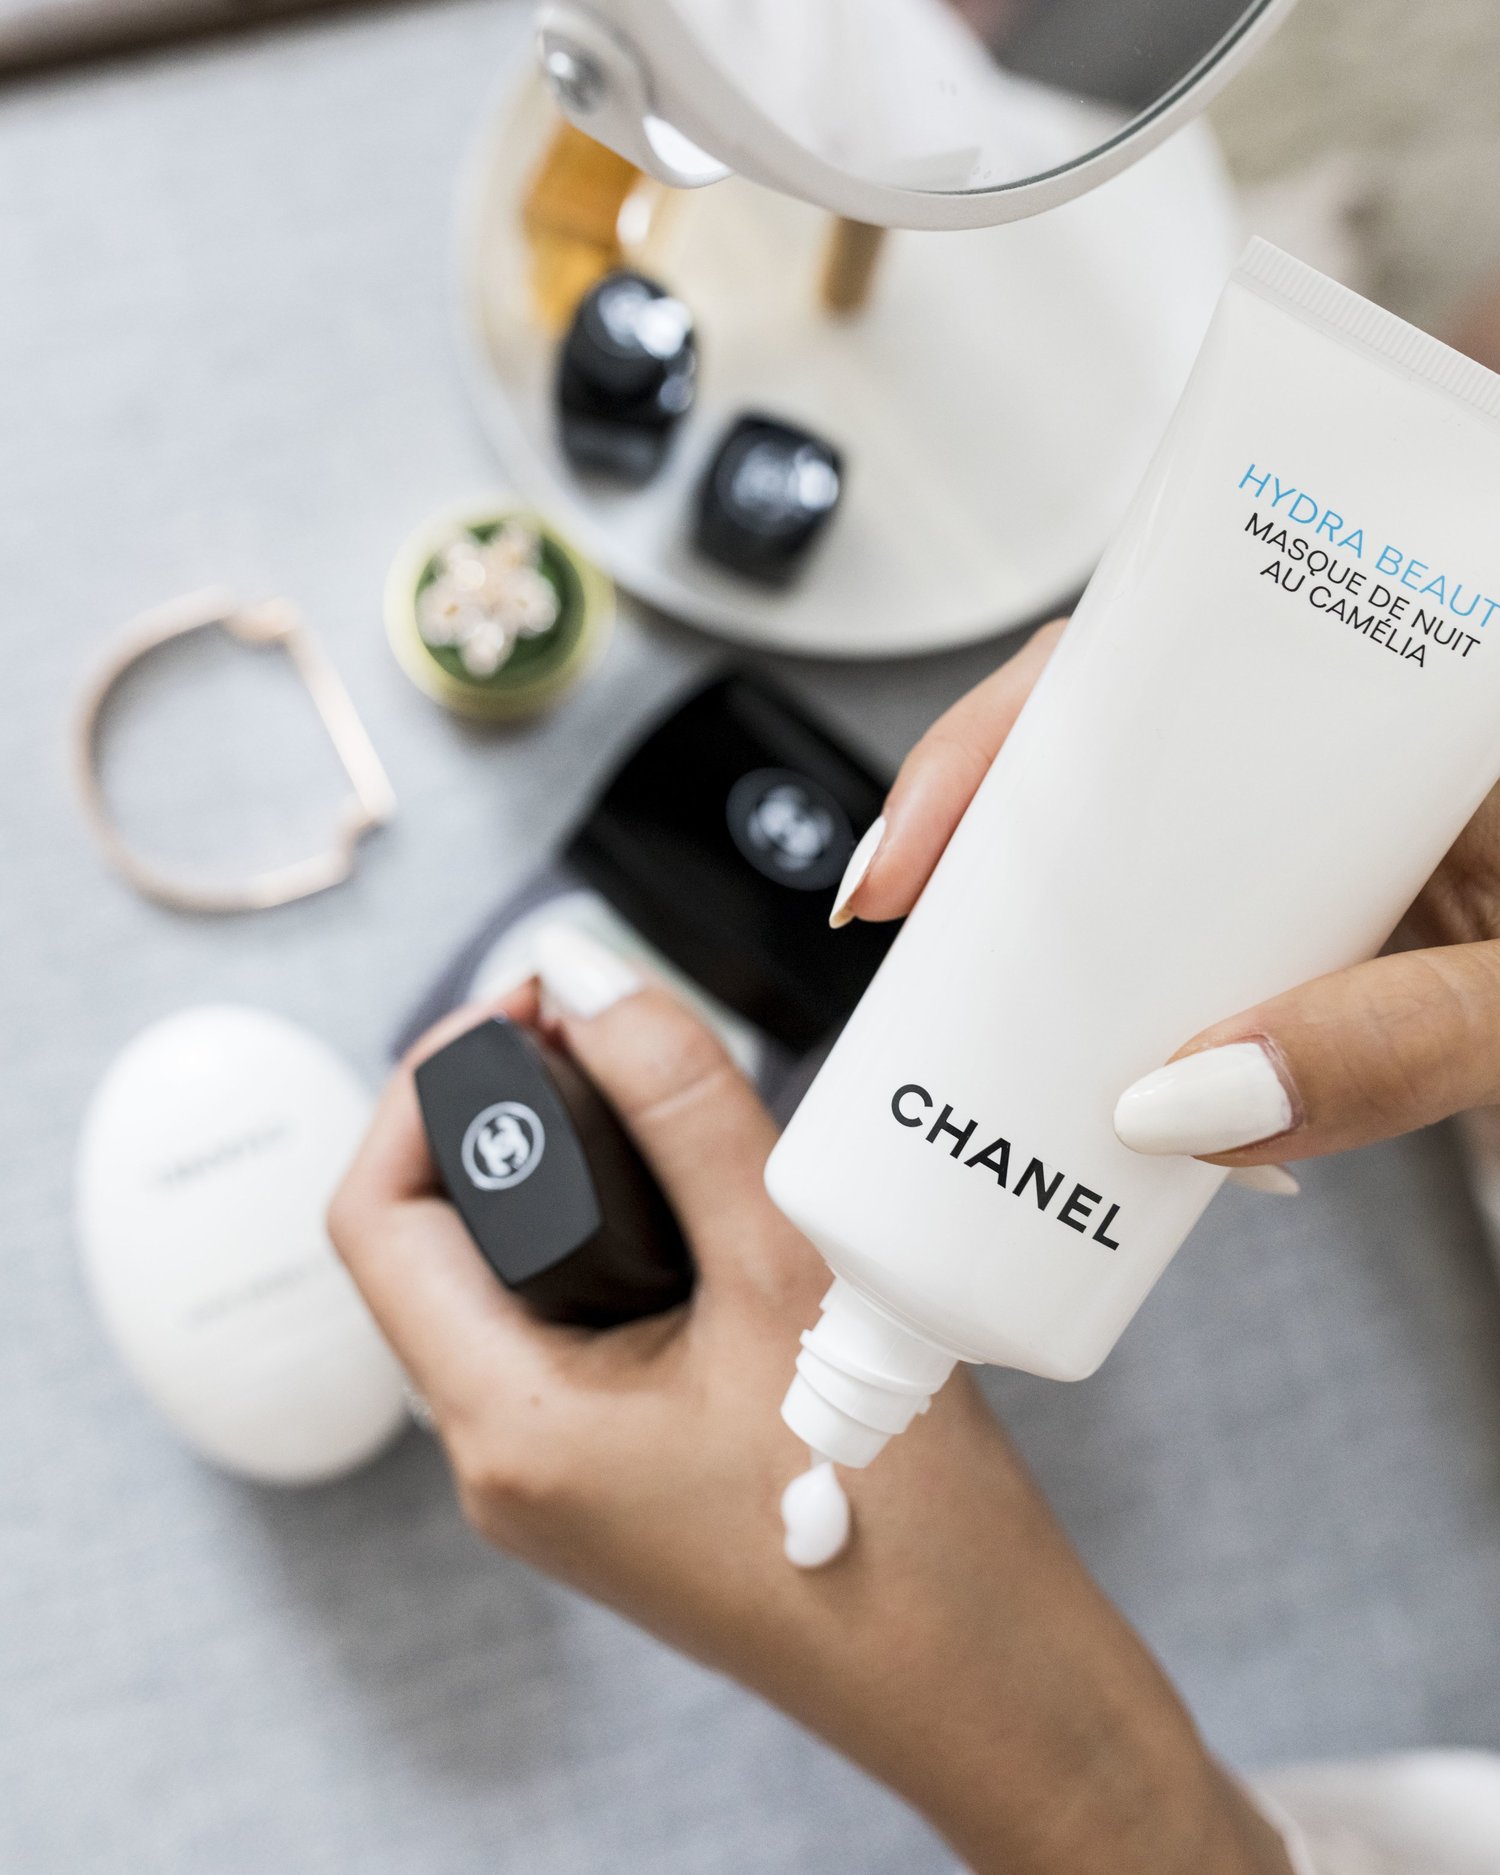 chanel face moisturizer for women